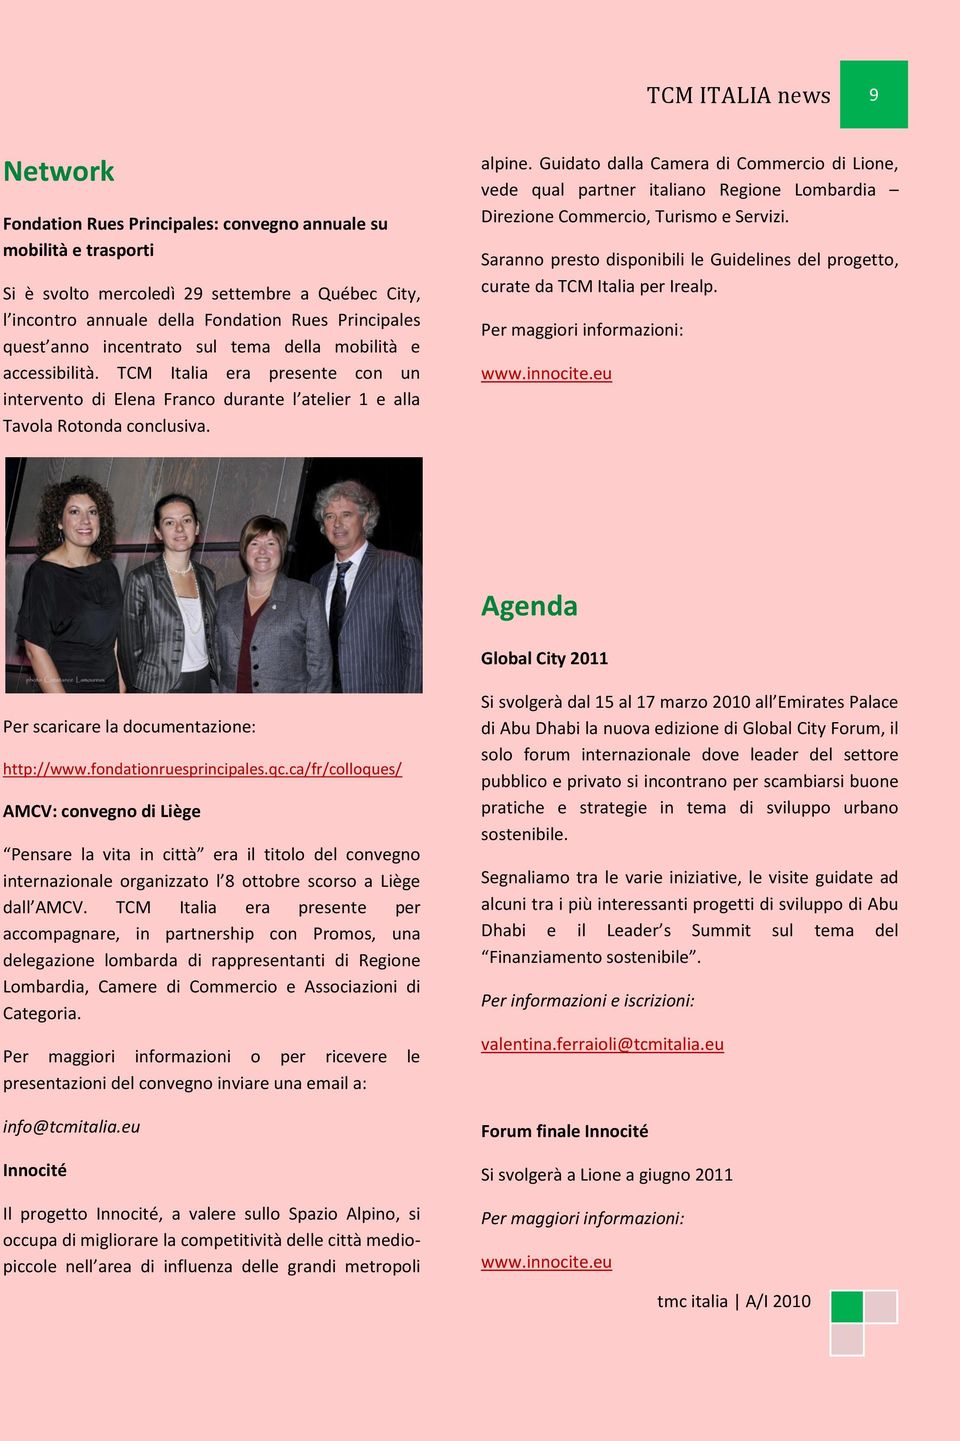 Guidato dalla Camera di Commercio di Lione, vede qual partner italiano Regione Lombardia Direzione Commercio, Turismo e Servizi.